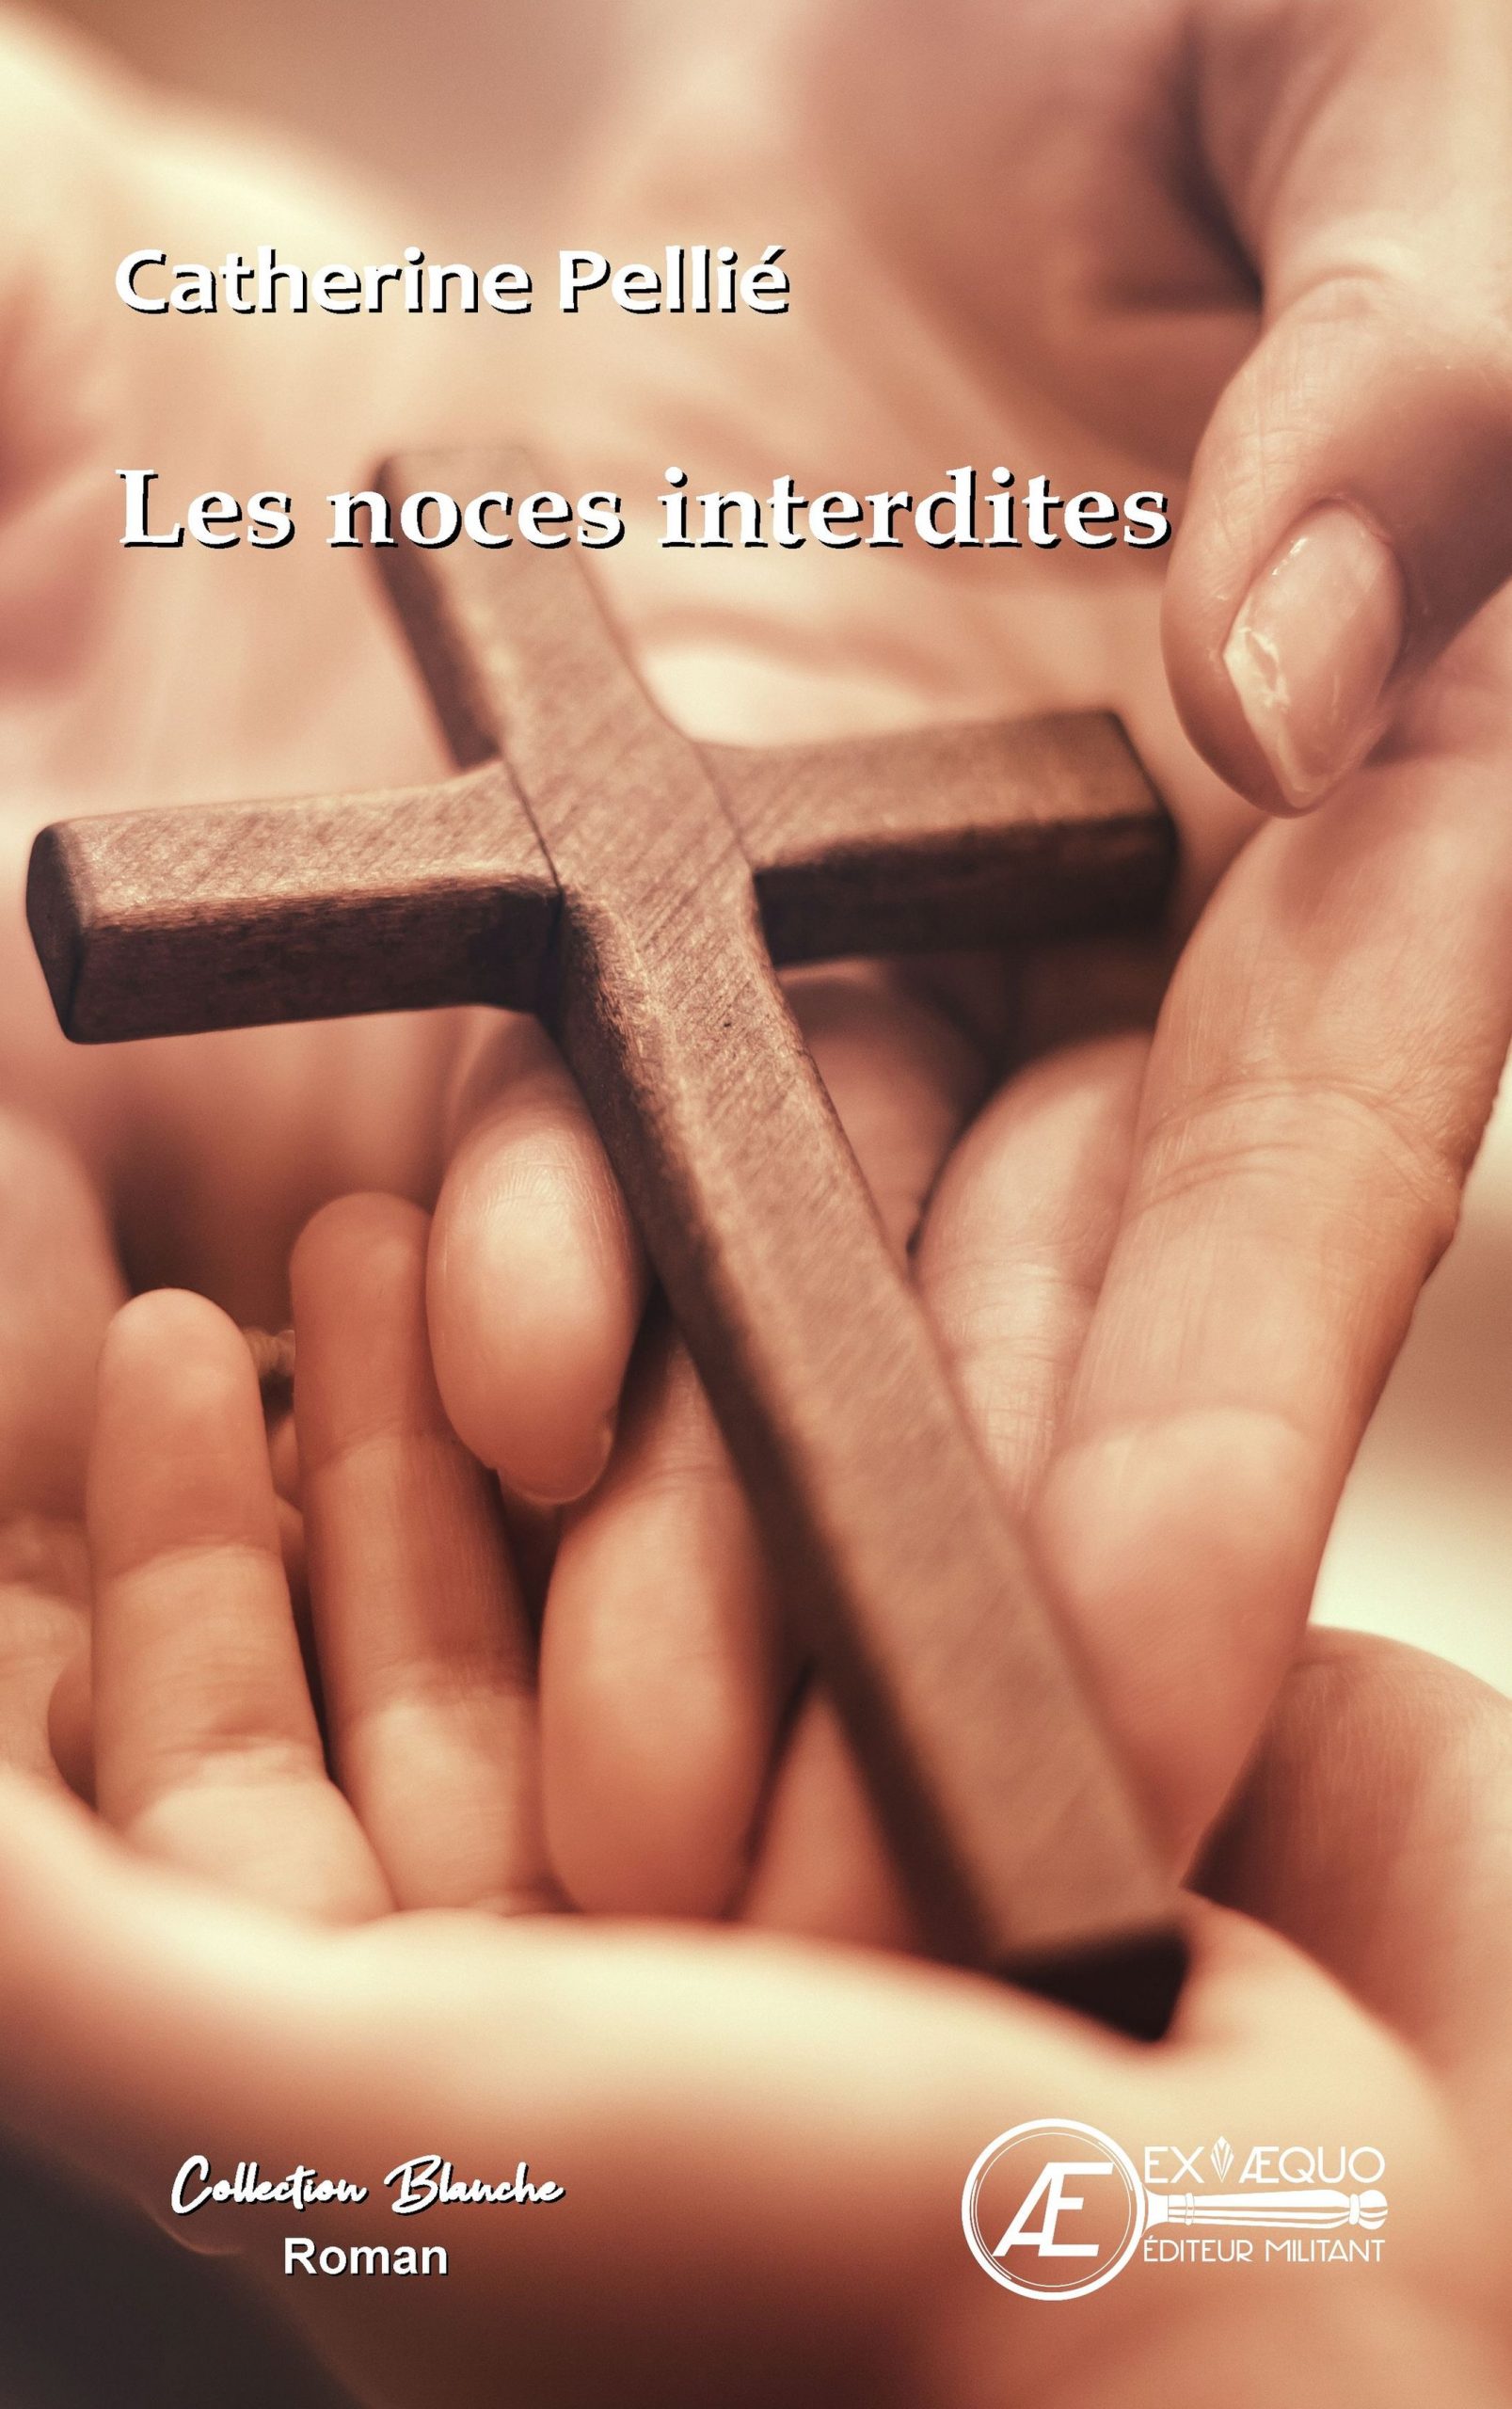 You are currently viewing Les noces interdites, de Catherine Pellié